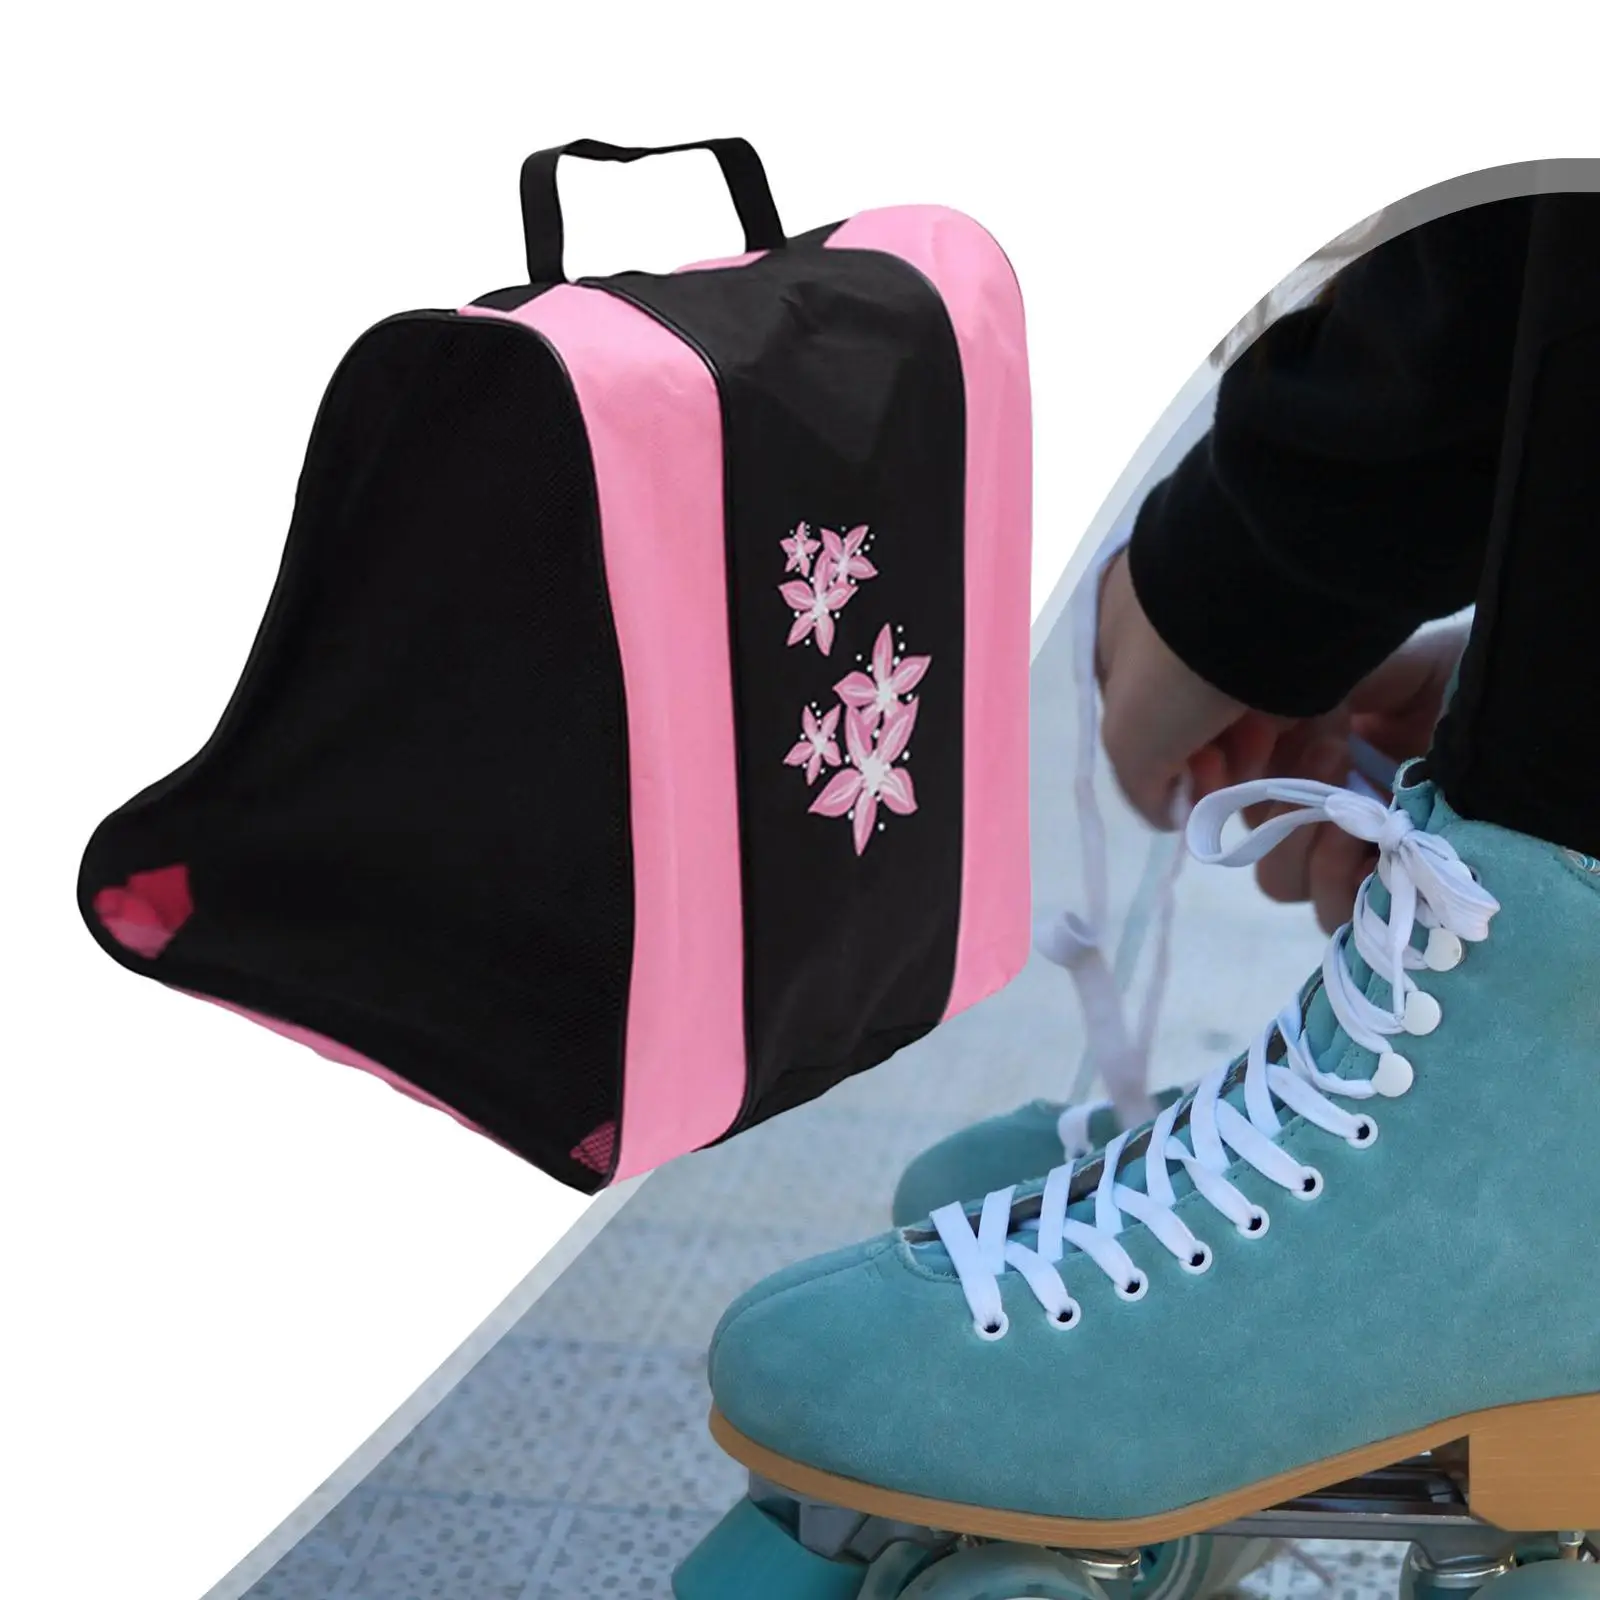 Portable Unisex Roller Skate Bag 3-Layer Storage Bag Skate Carrying Bag